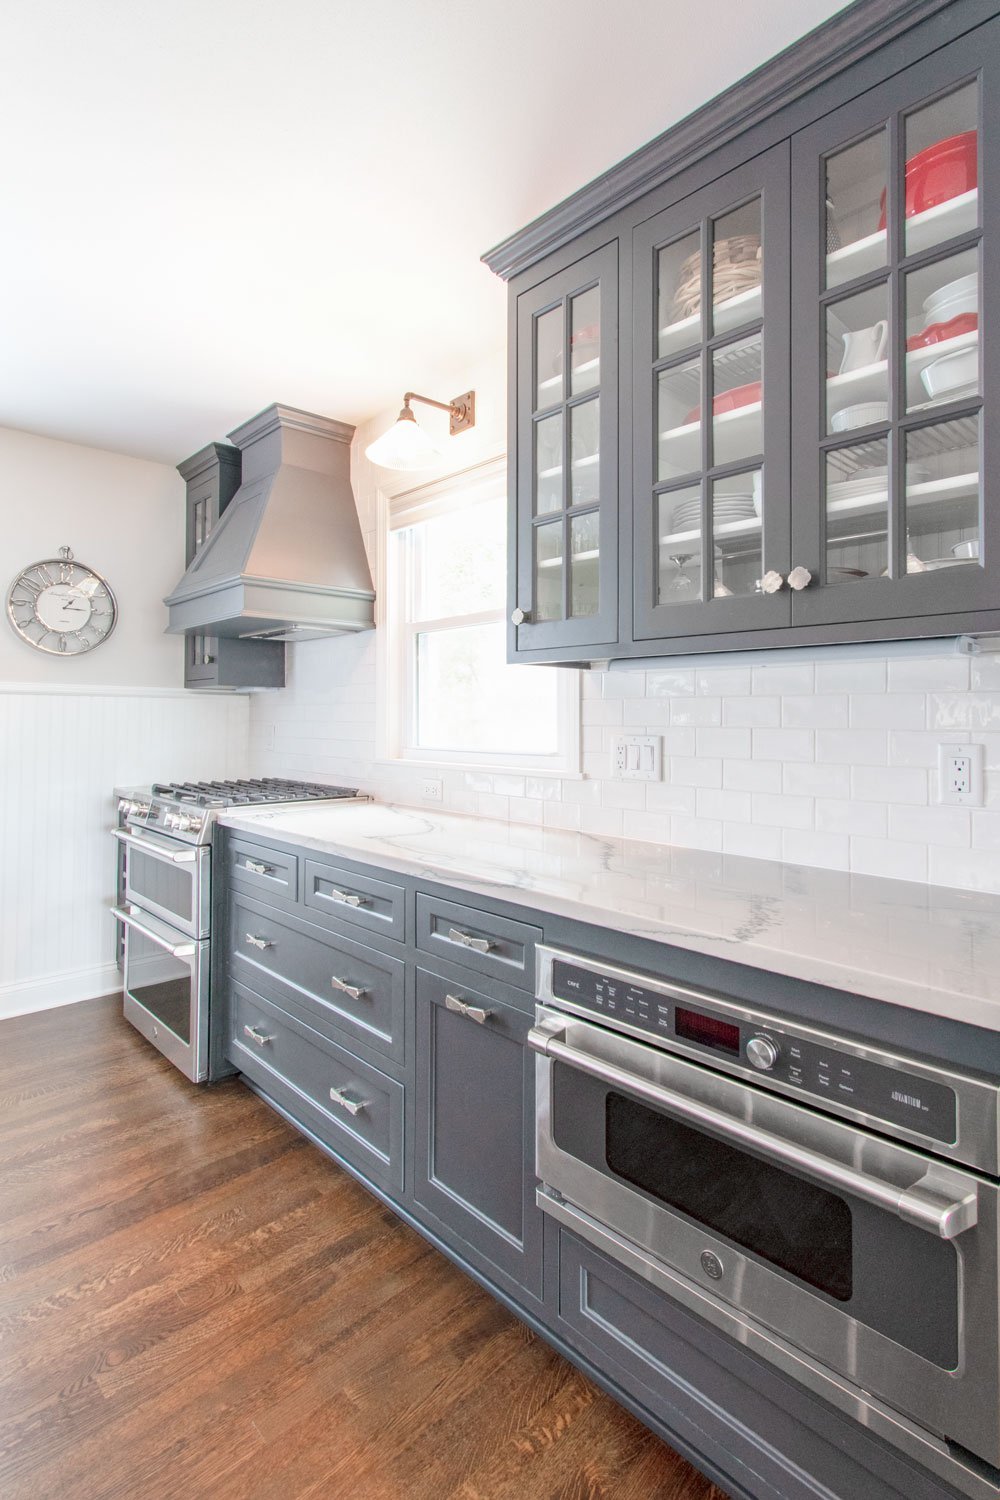 Delafield Gray kitchen cabinets and white quartzite counters